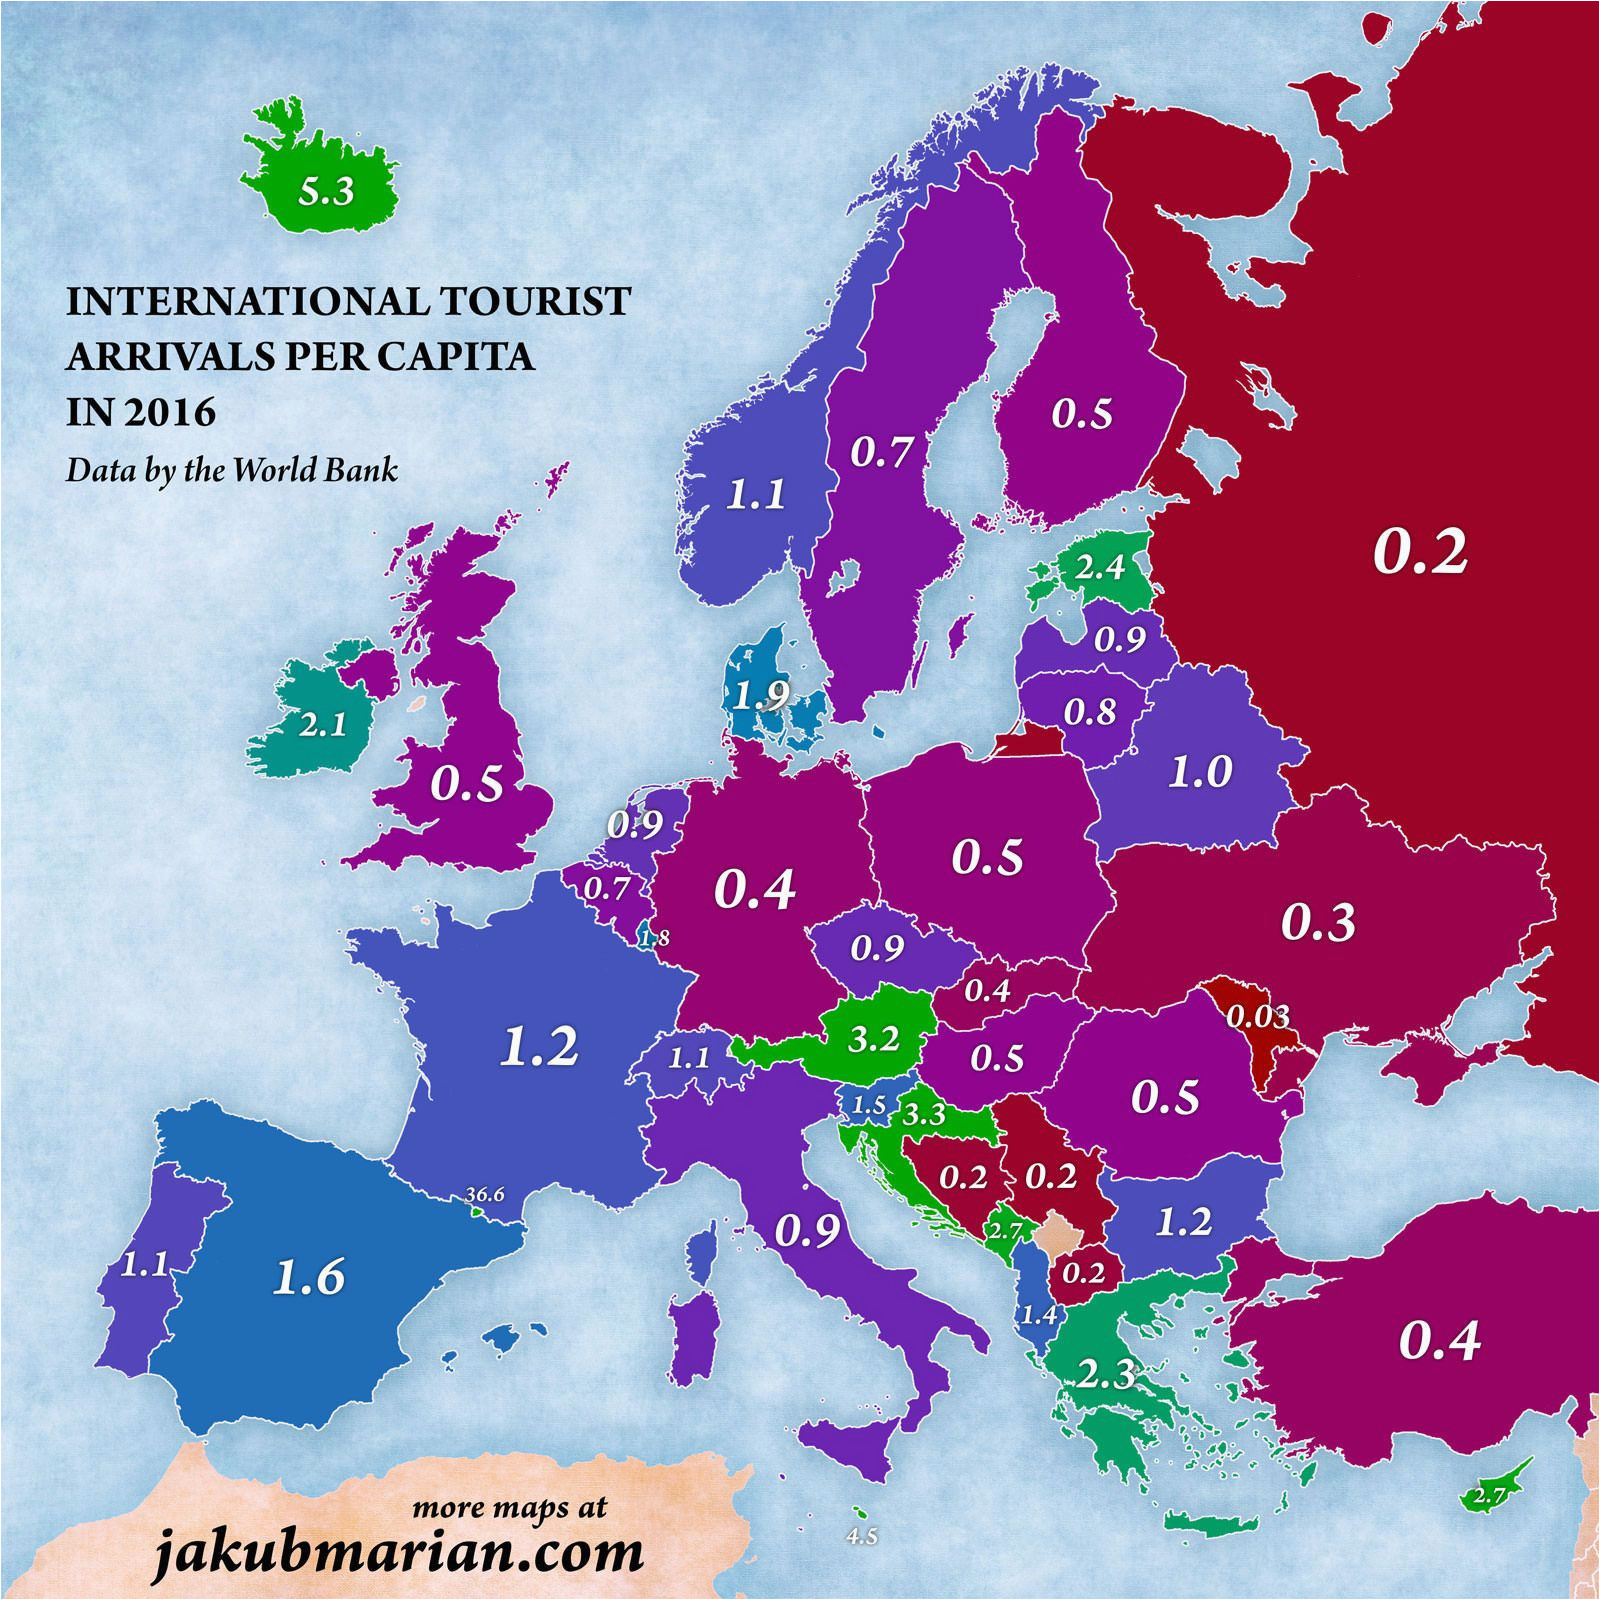 international tourist arrivals per capita in europe maps